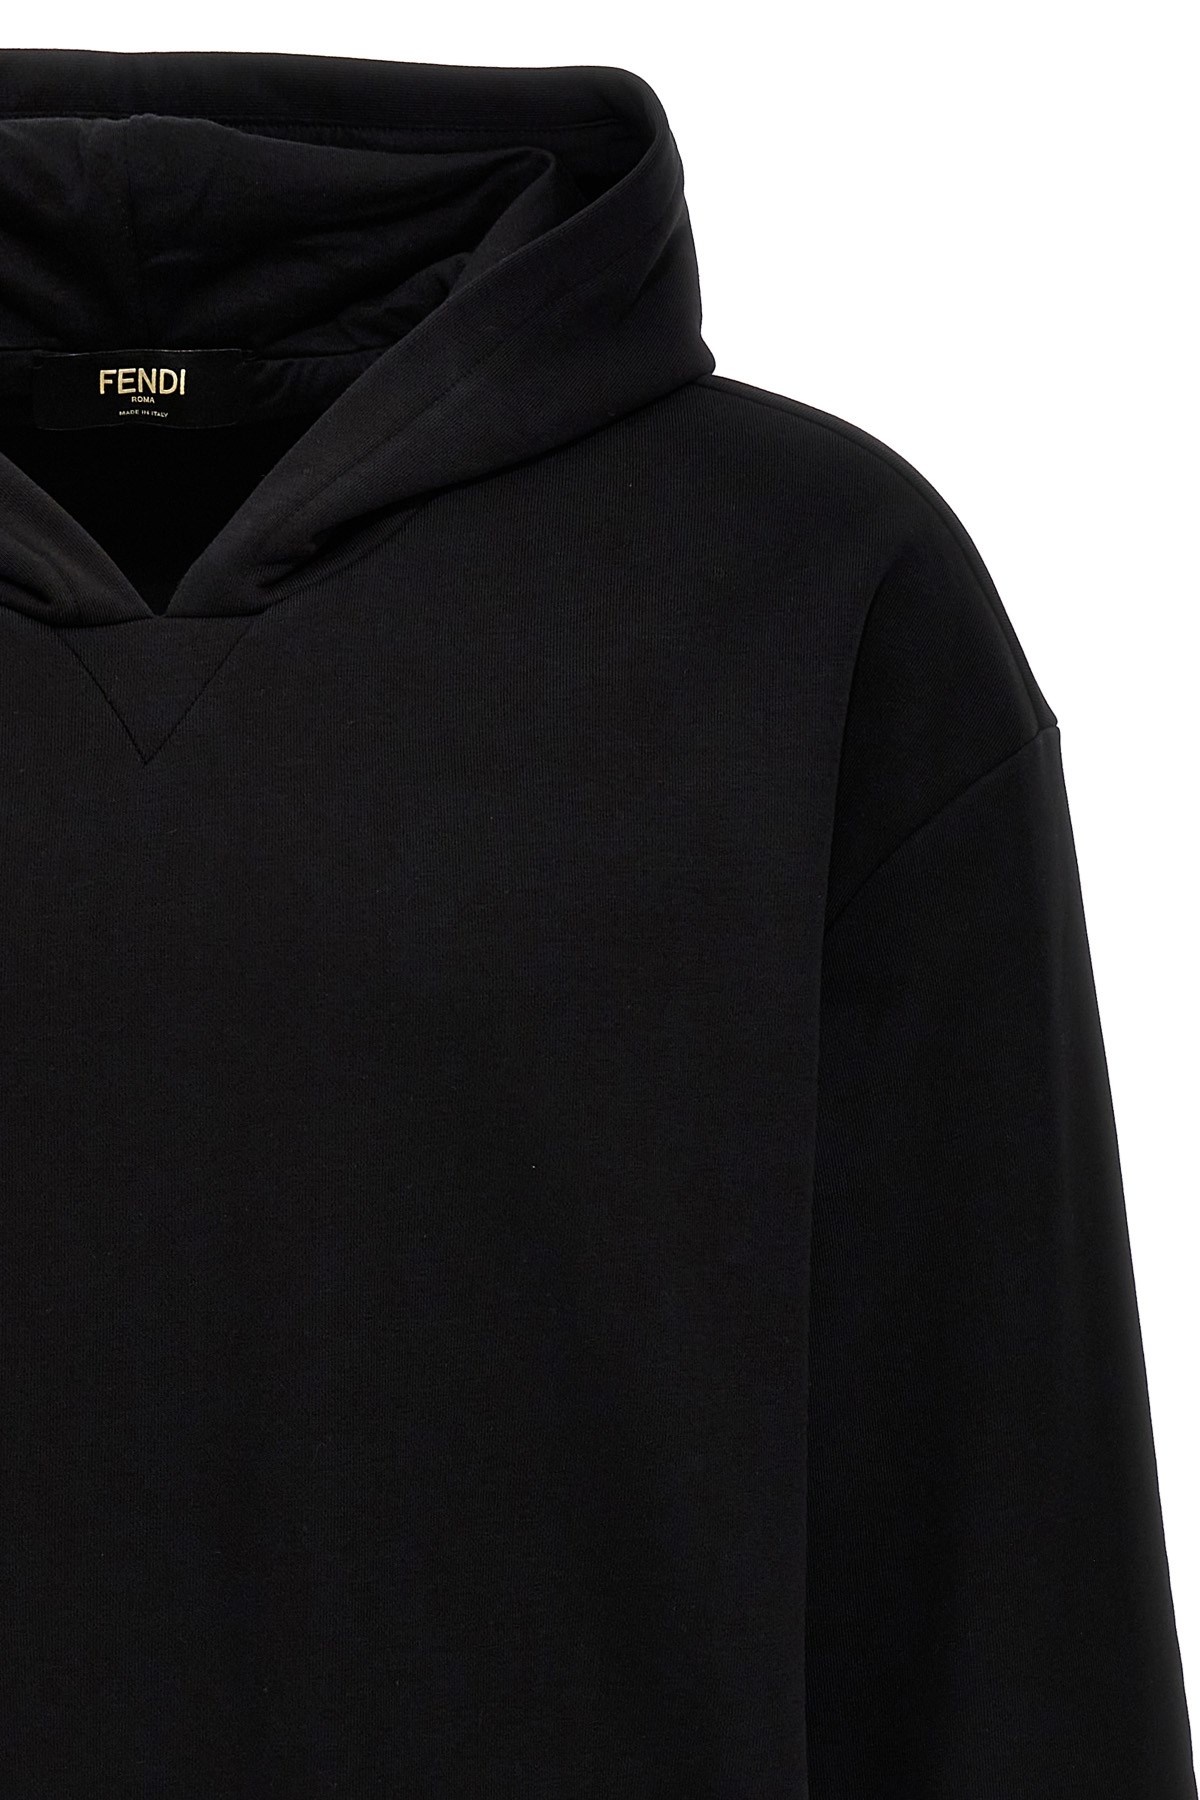 'FF' hoodie - 3